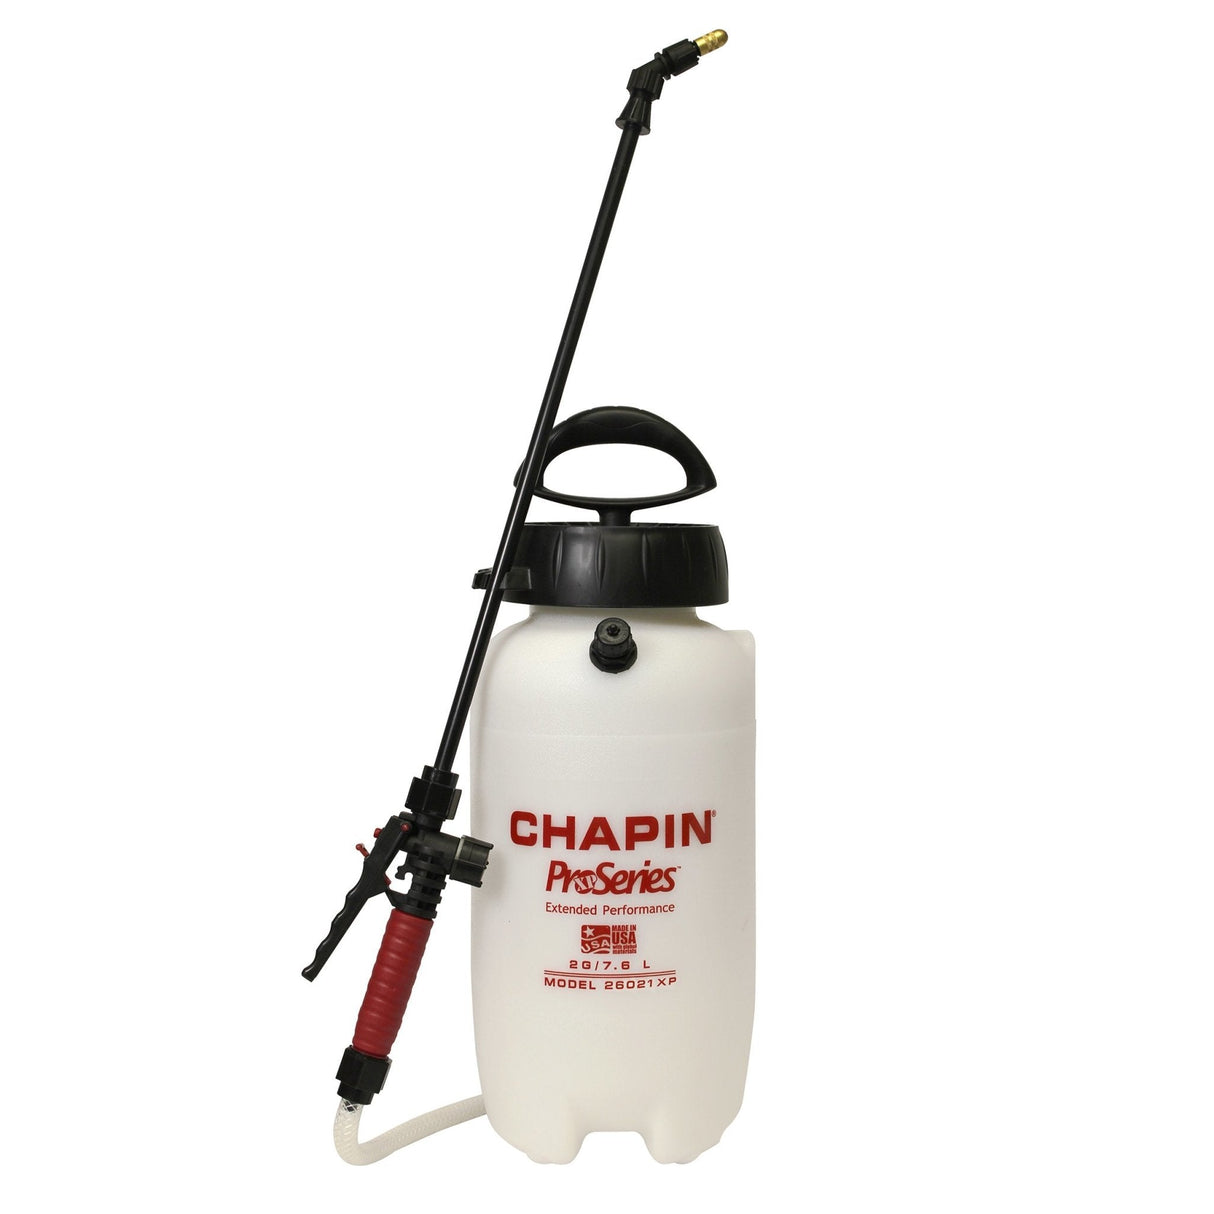 7,6 litri - Spruzzatore Chapin 26021XP ProSeries con guarnizioni FKM r –  Everest Paints